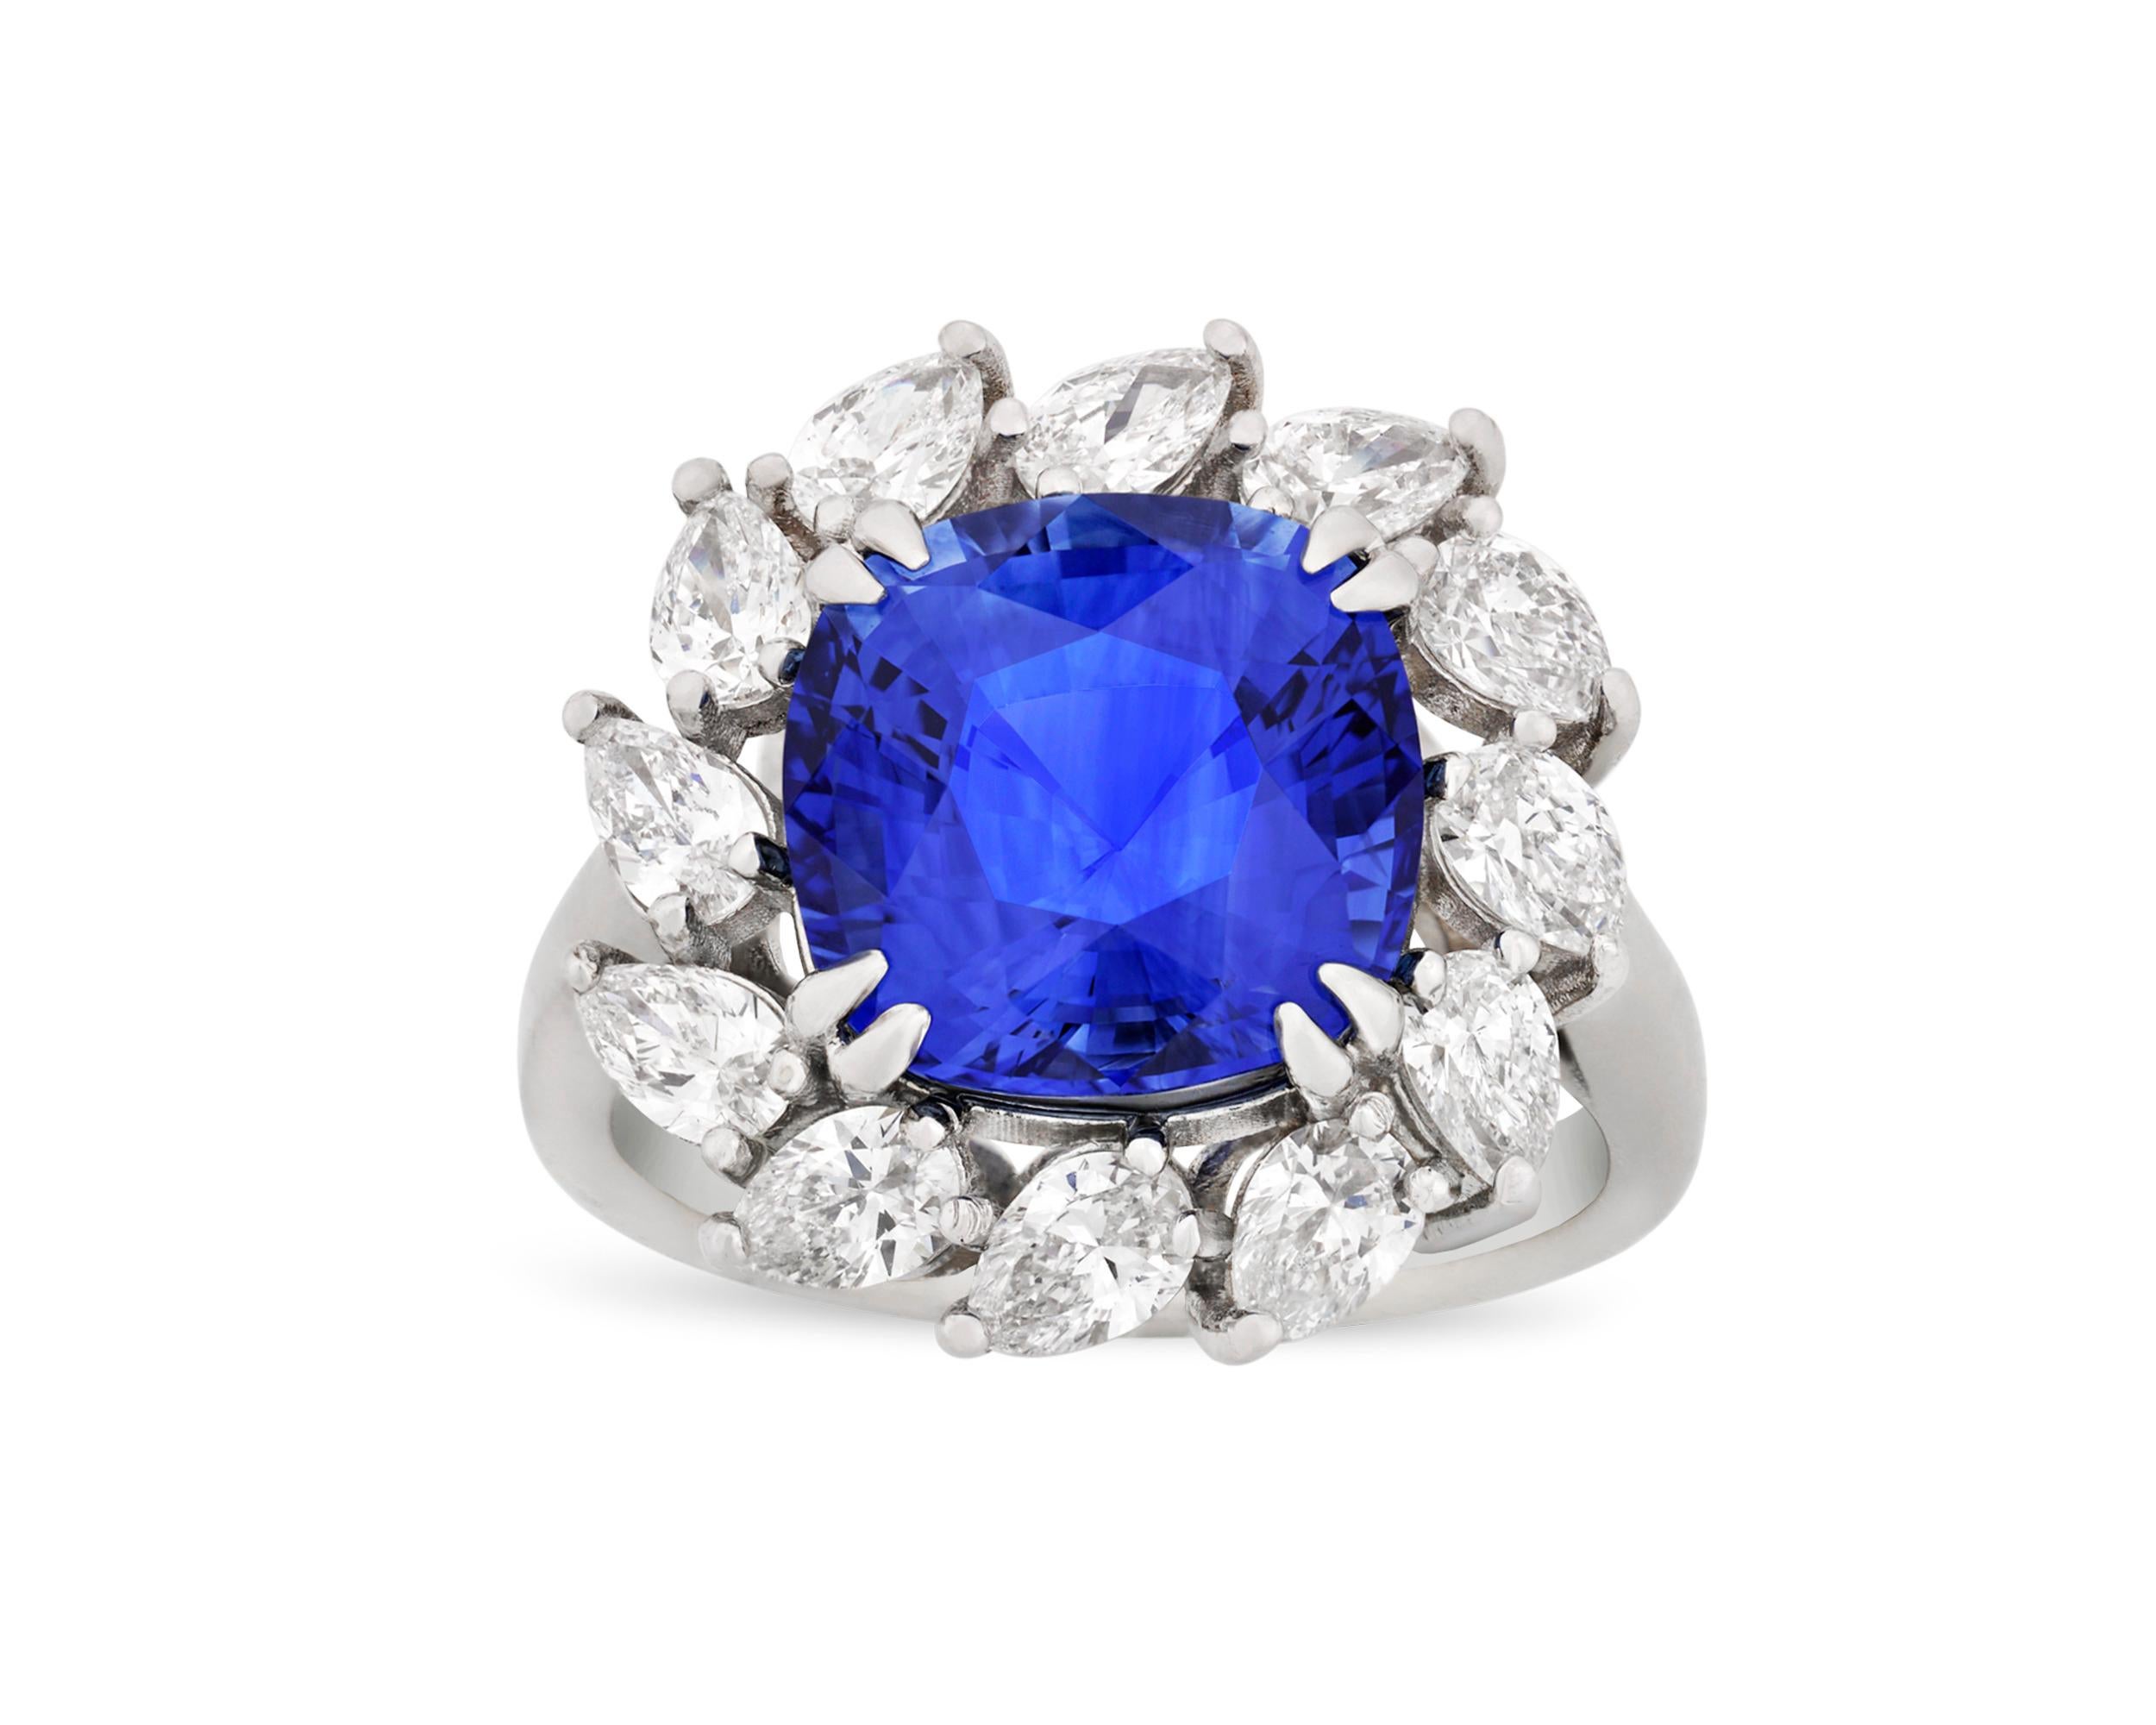 Cushion Cut Ceylon Blue Sapphire Ring, 6.30 Carat